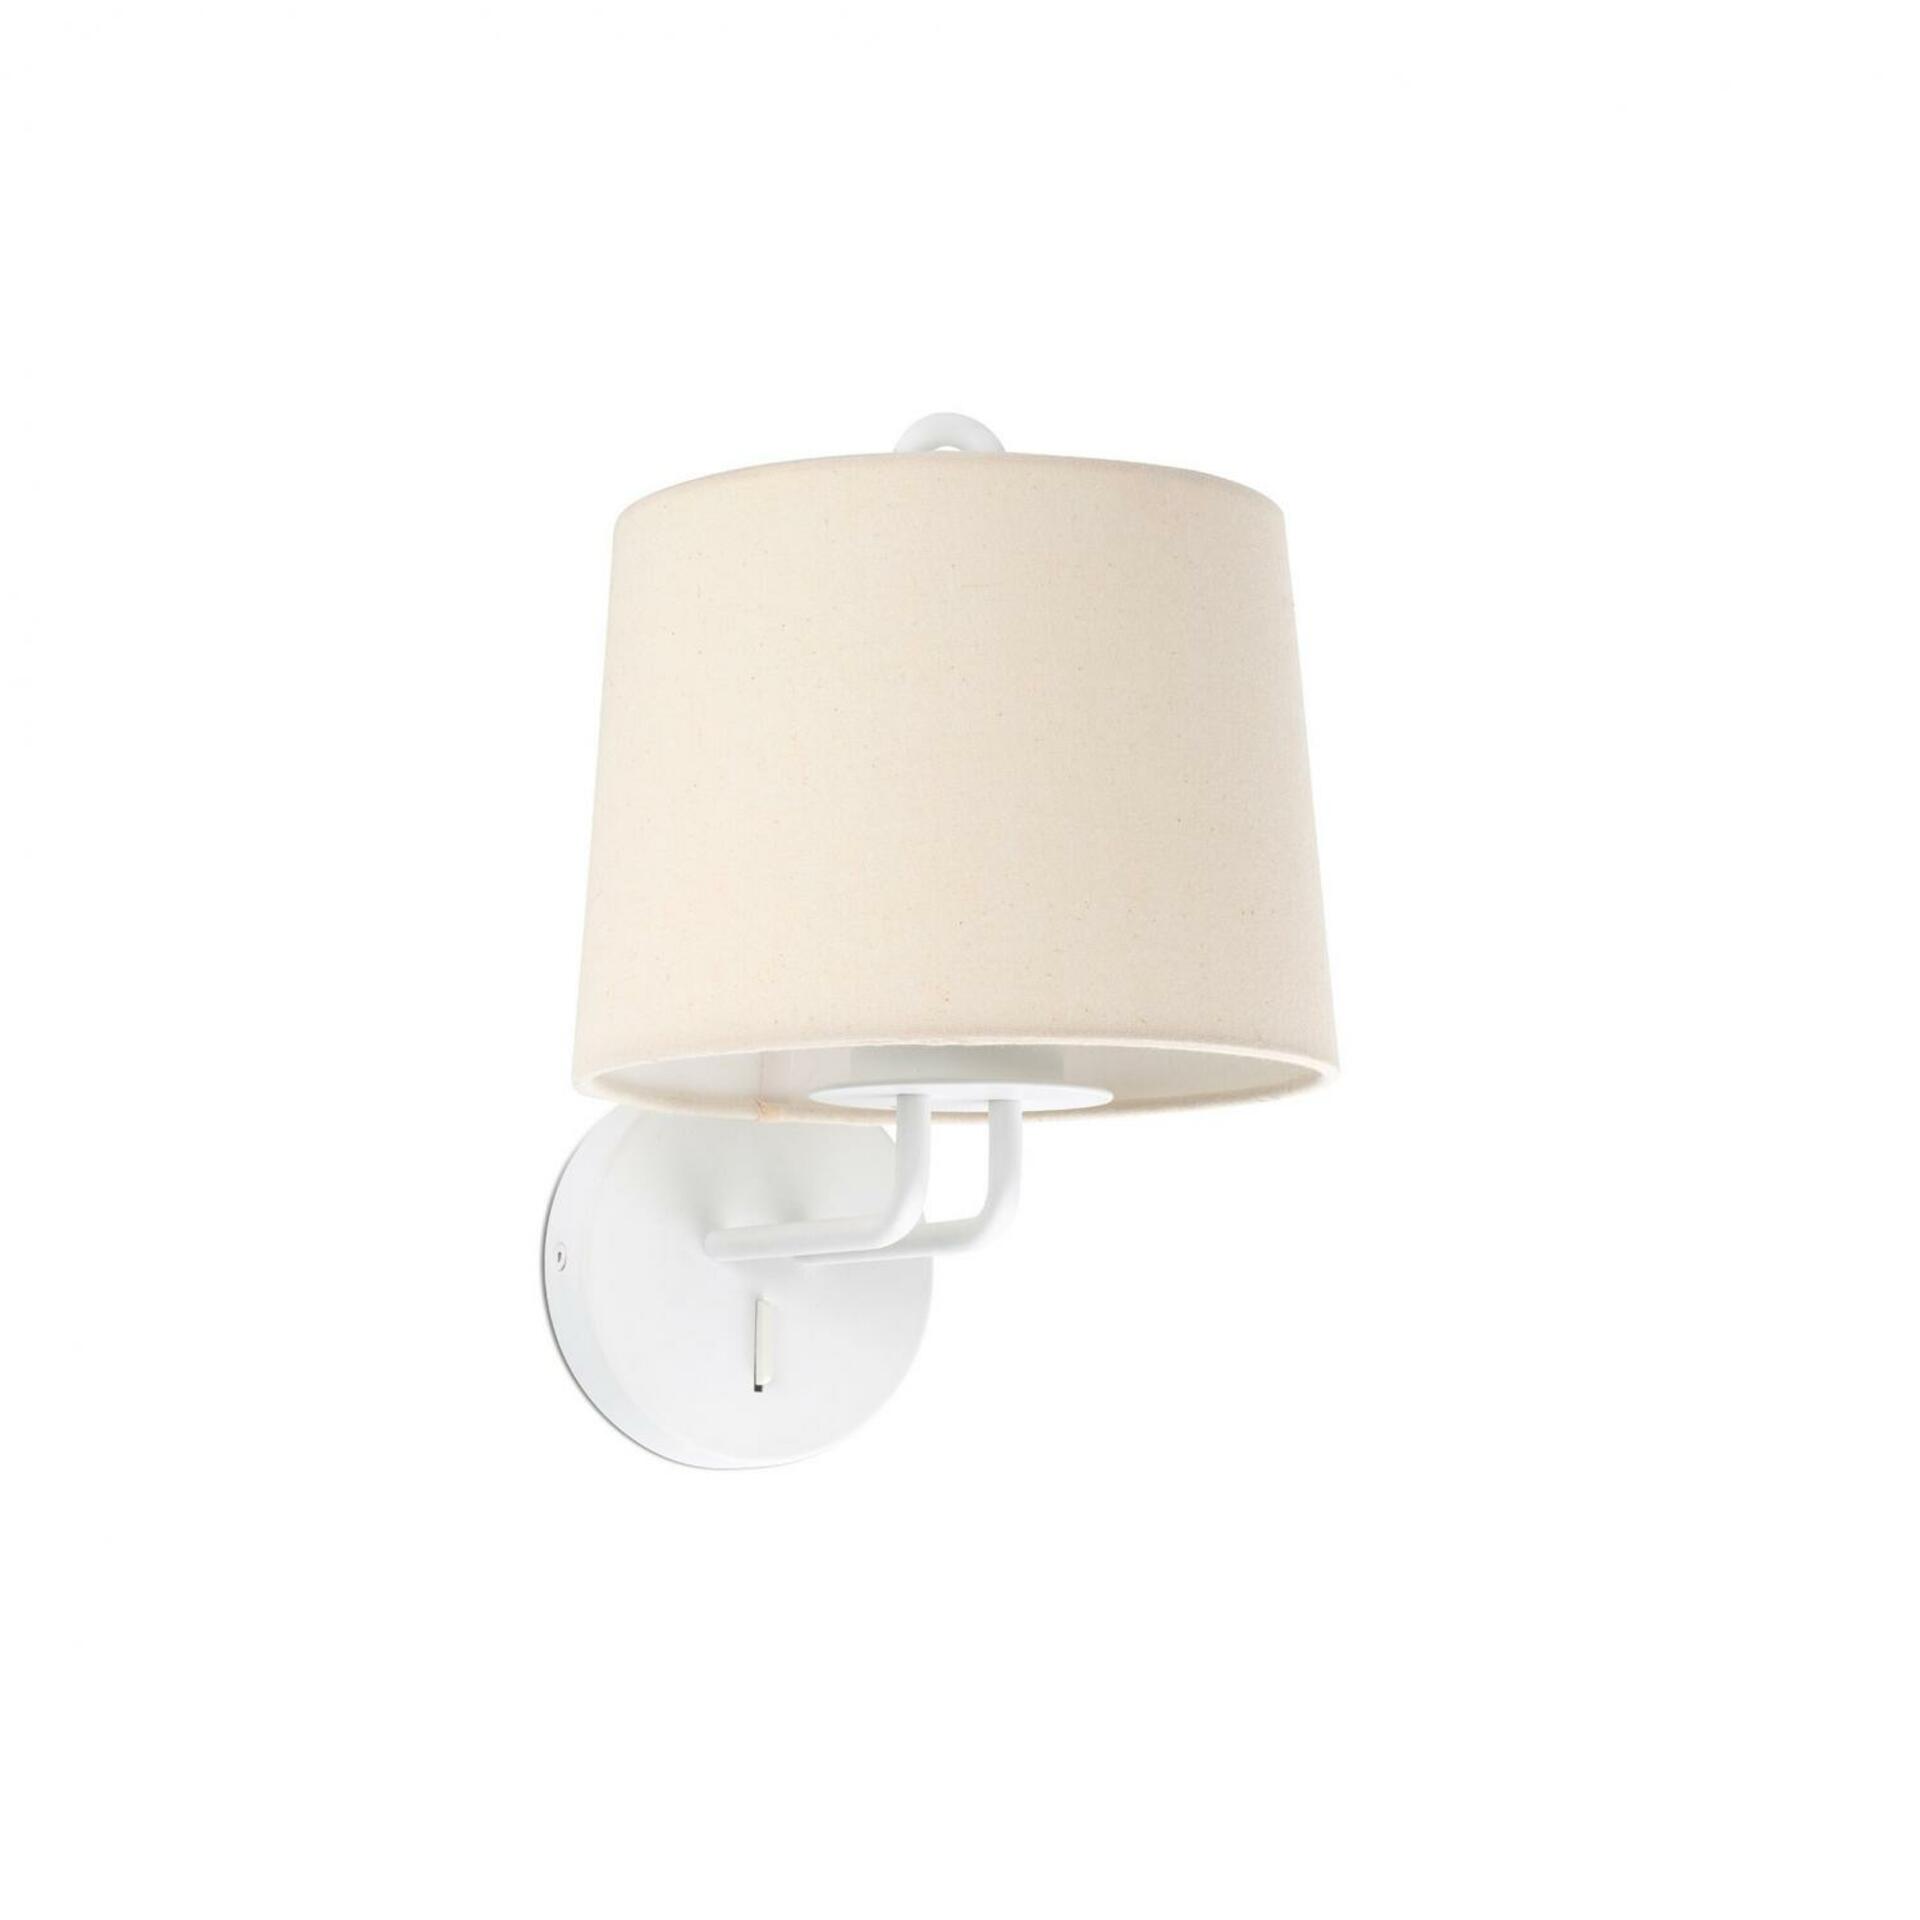 FARO MONTREAL nástěnná lampa, bílá/béžová